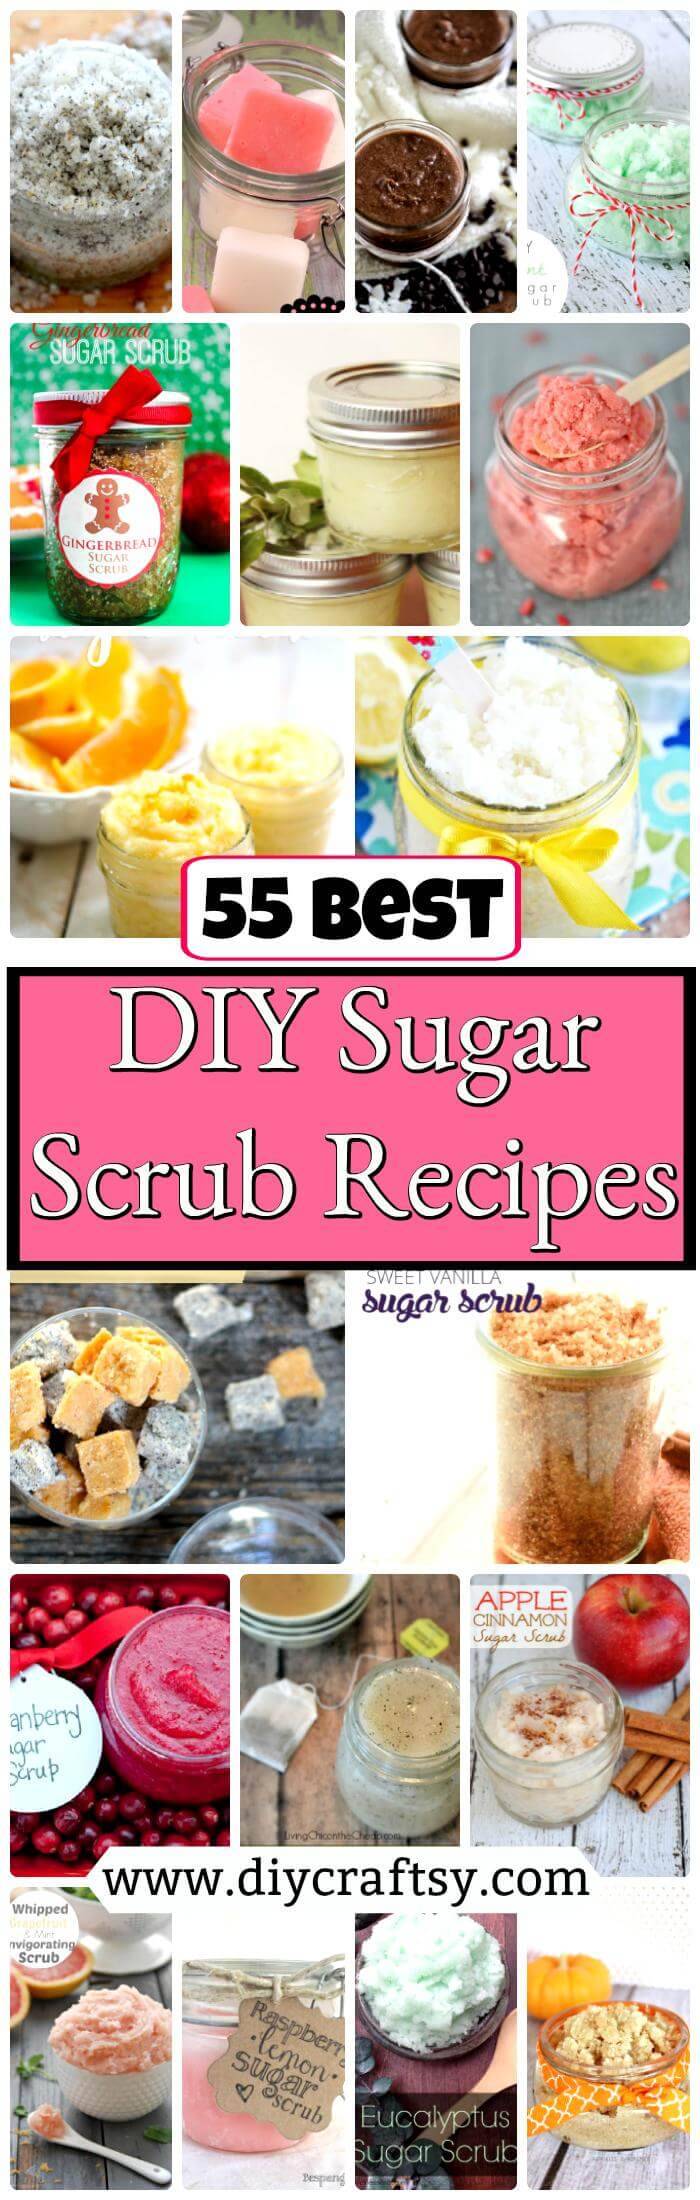 DIY Sugar Scrub Recipes